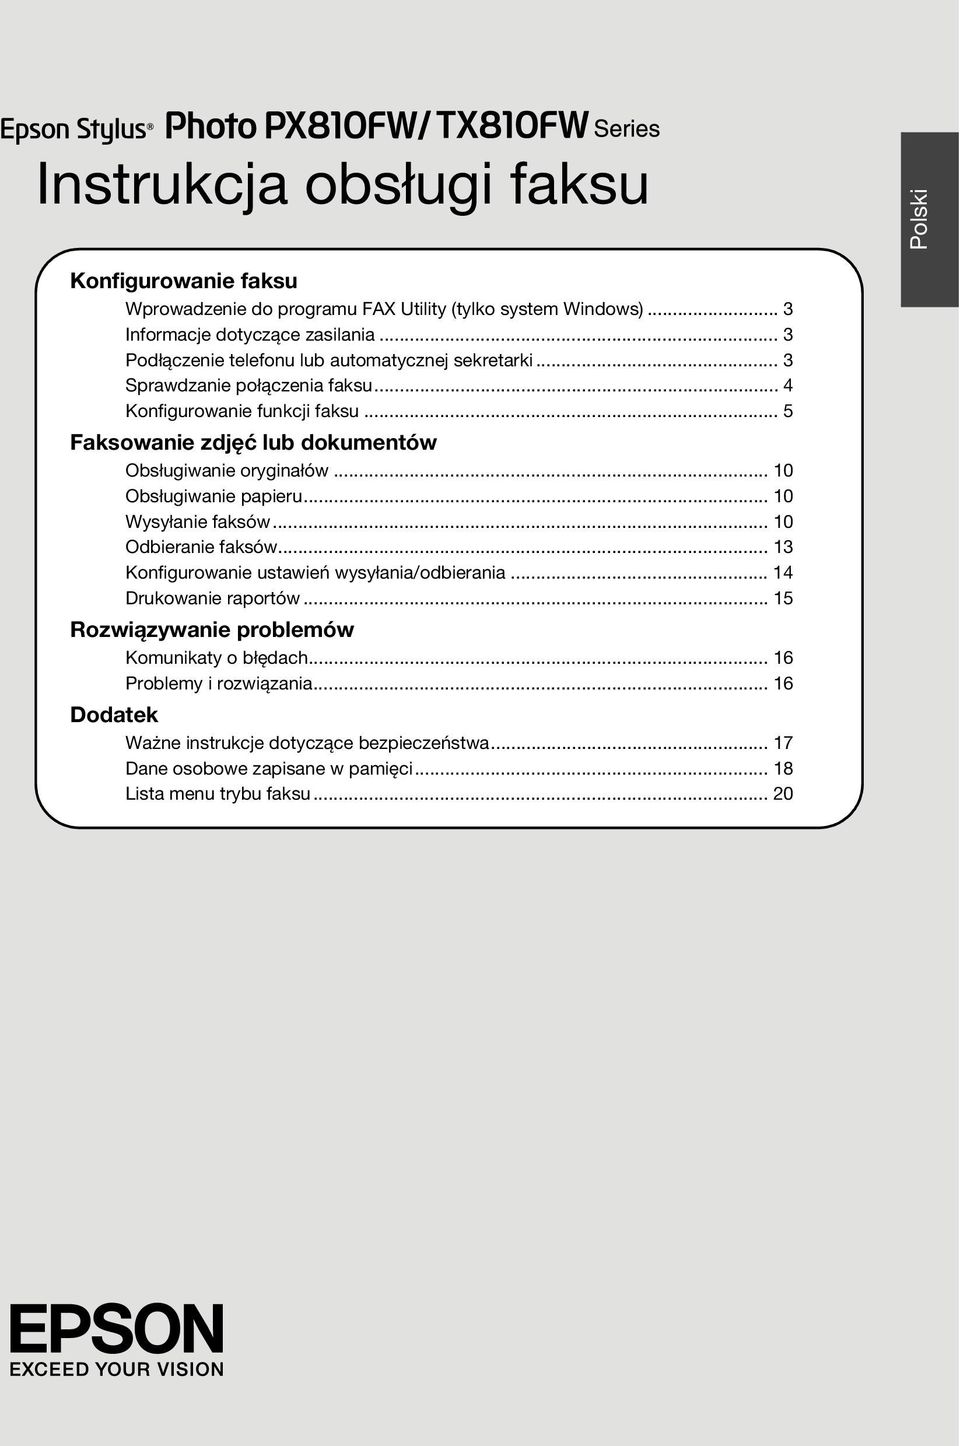 Instrukcja obsługi faksu - PDF Free Download